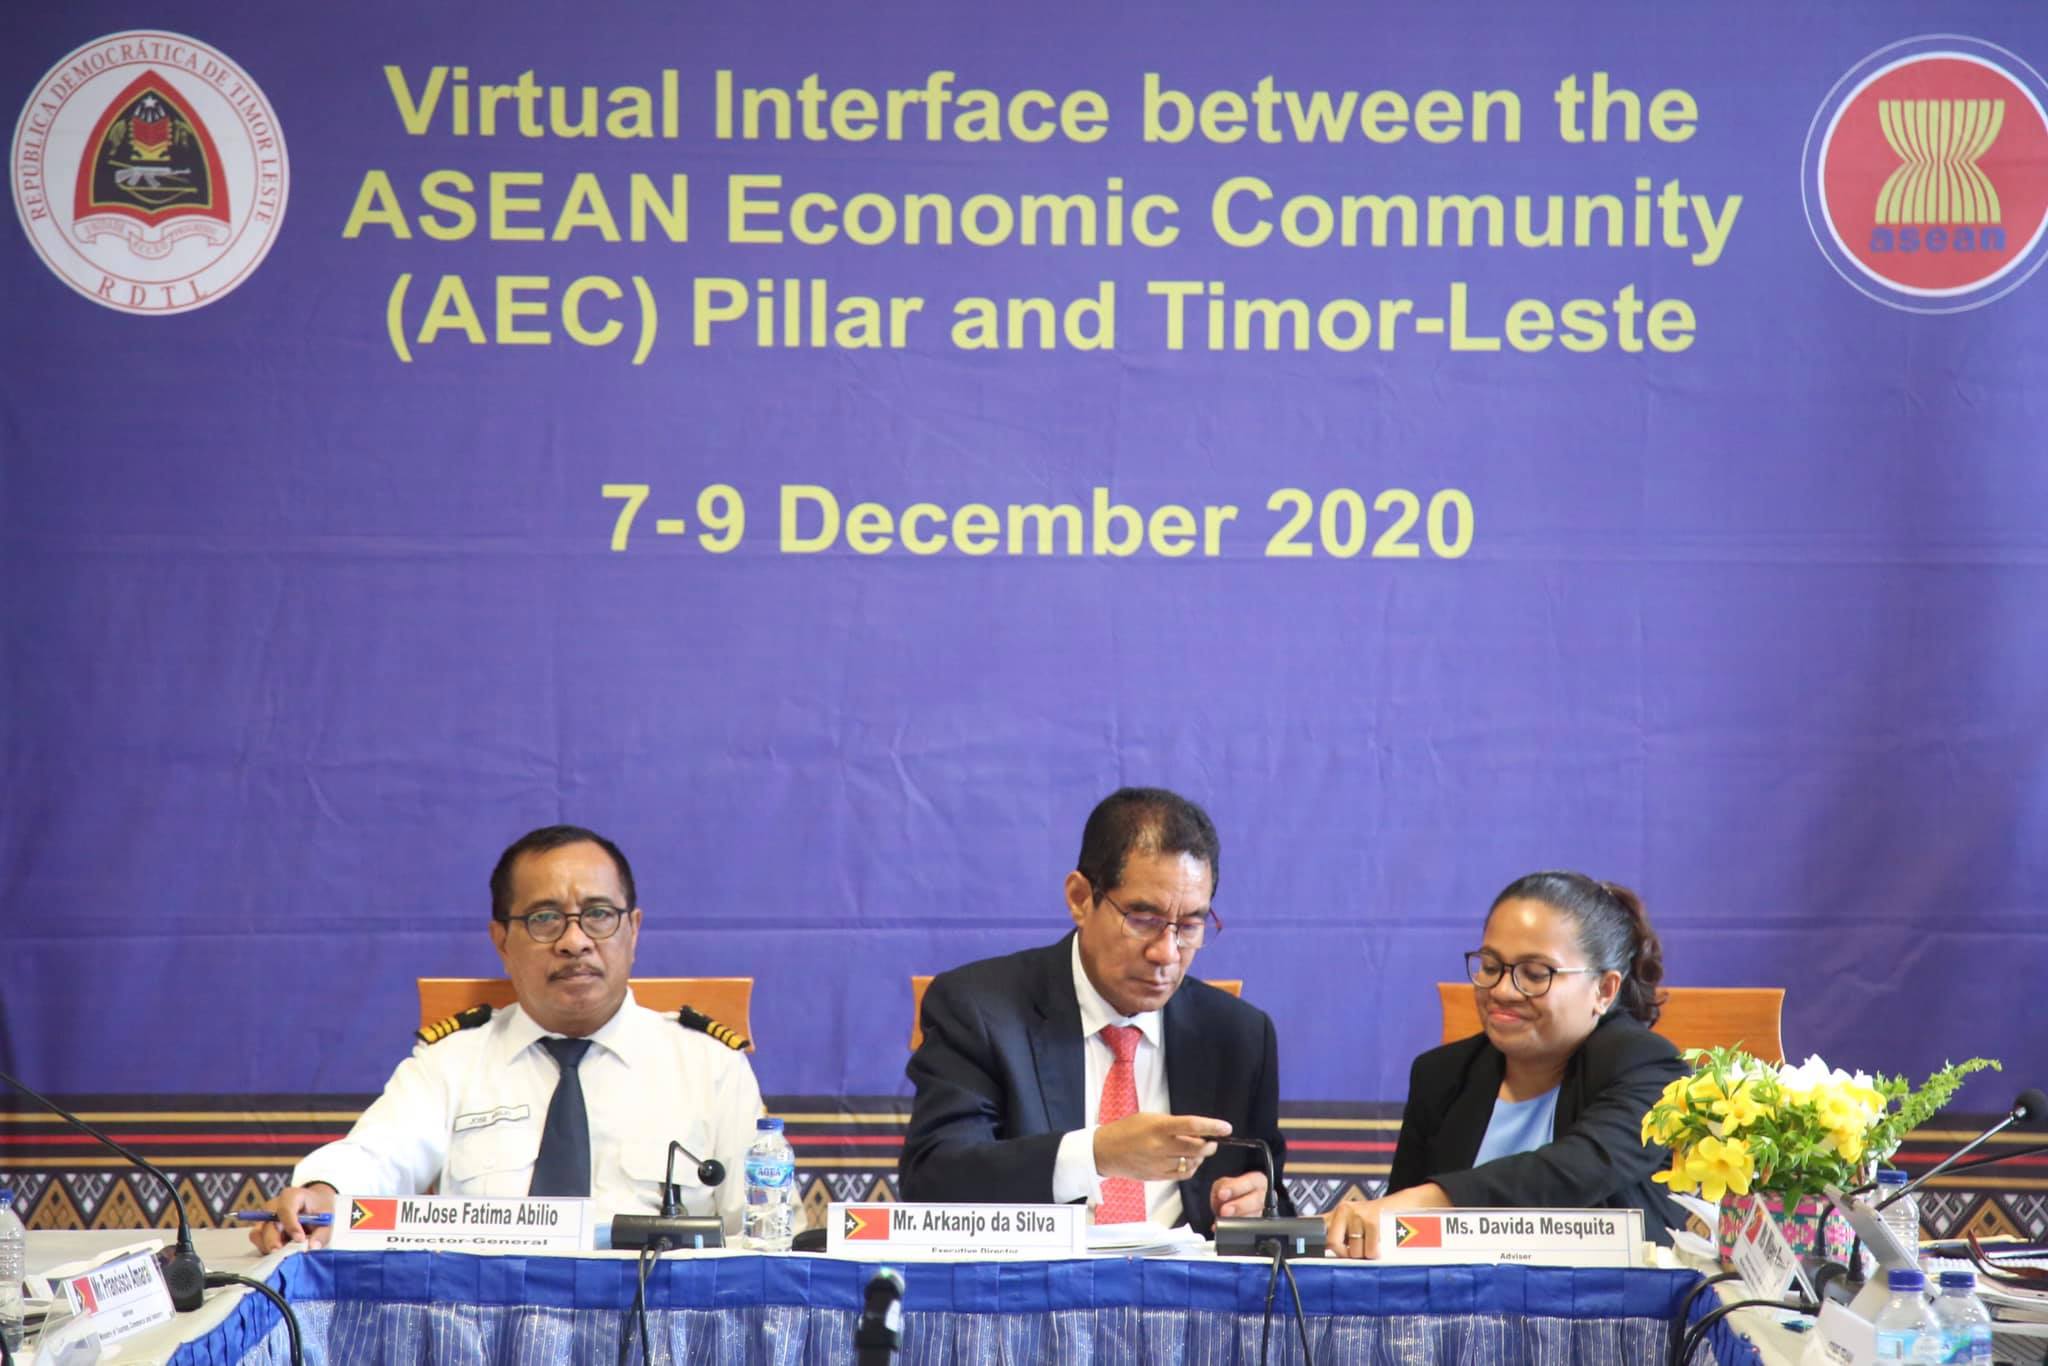 TL hola parte iha enkontru virtuál komunidade ekonómiku ASEAN